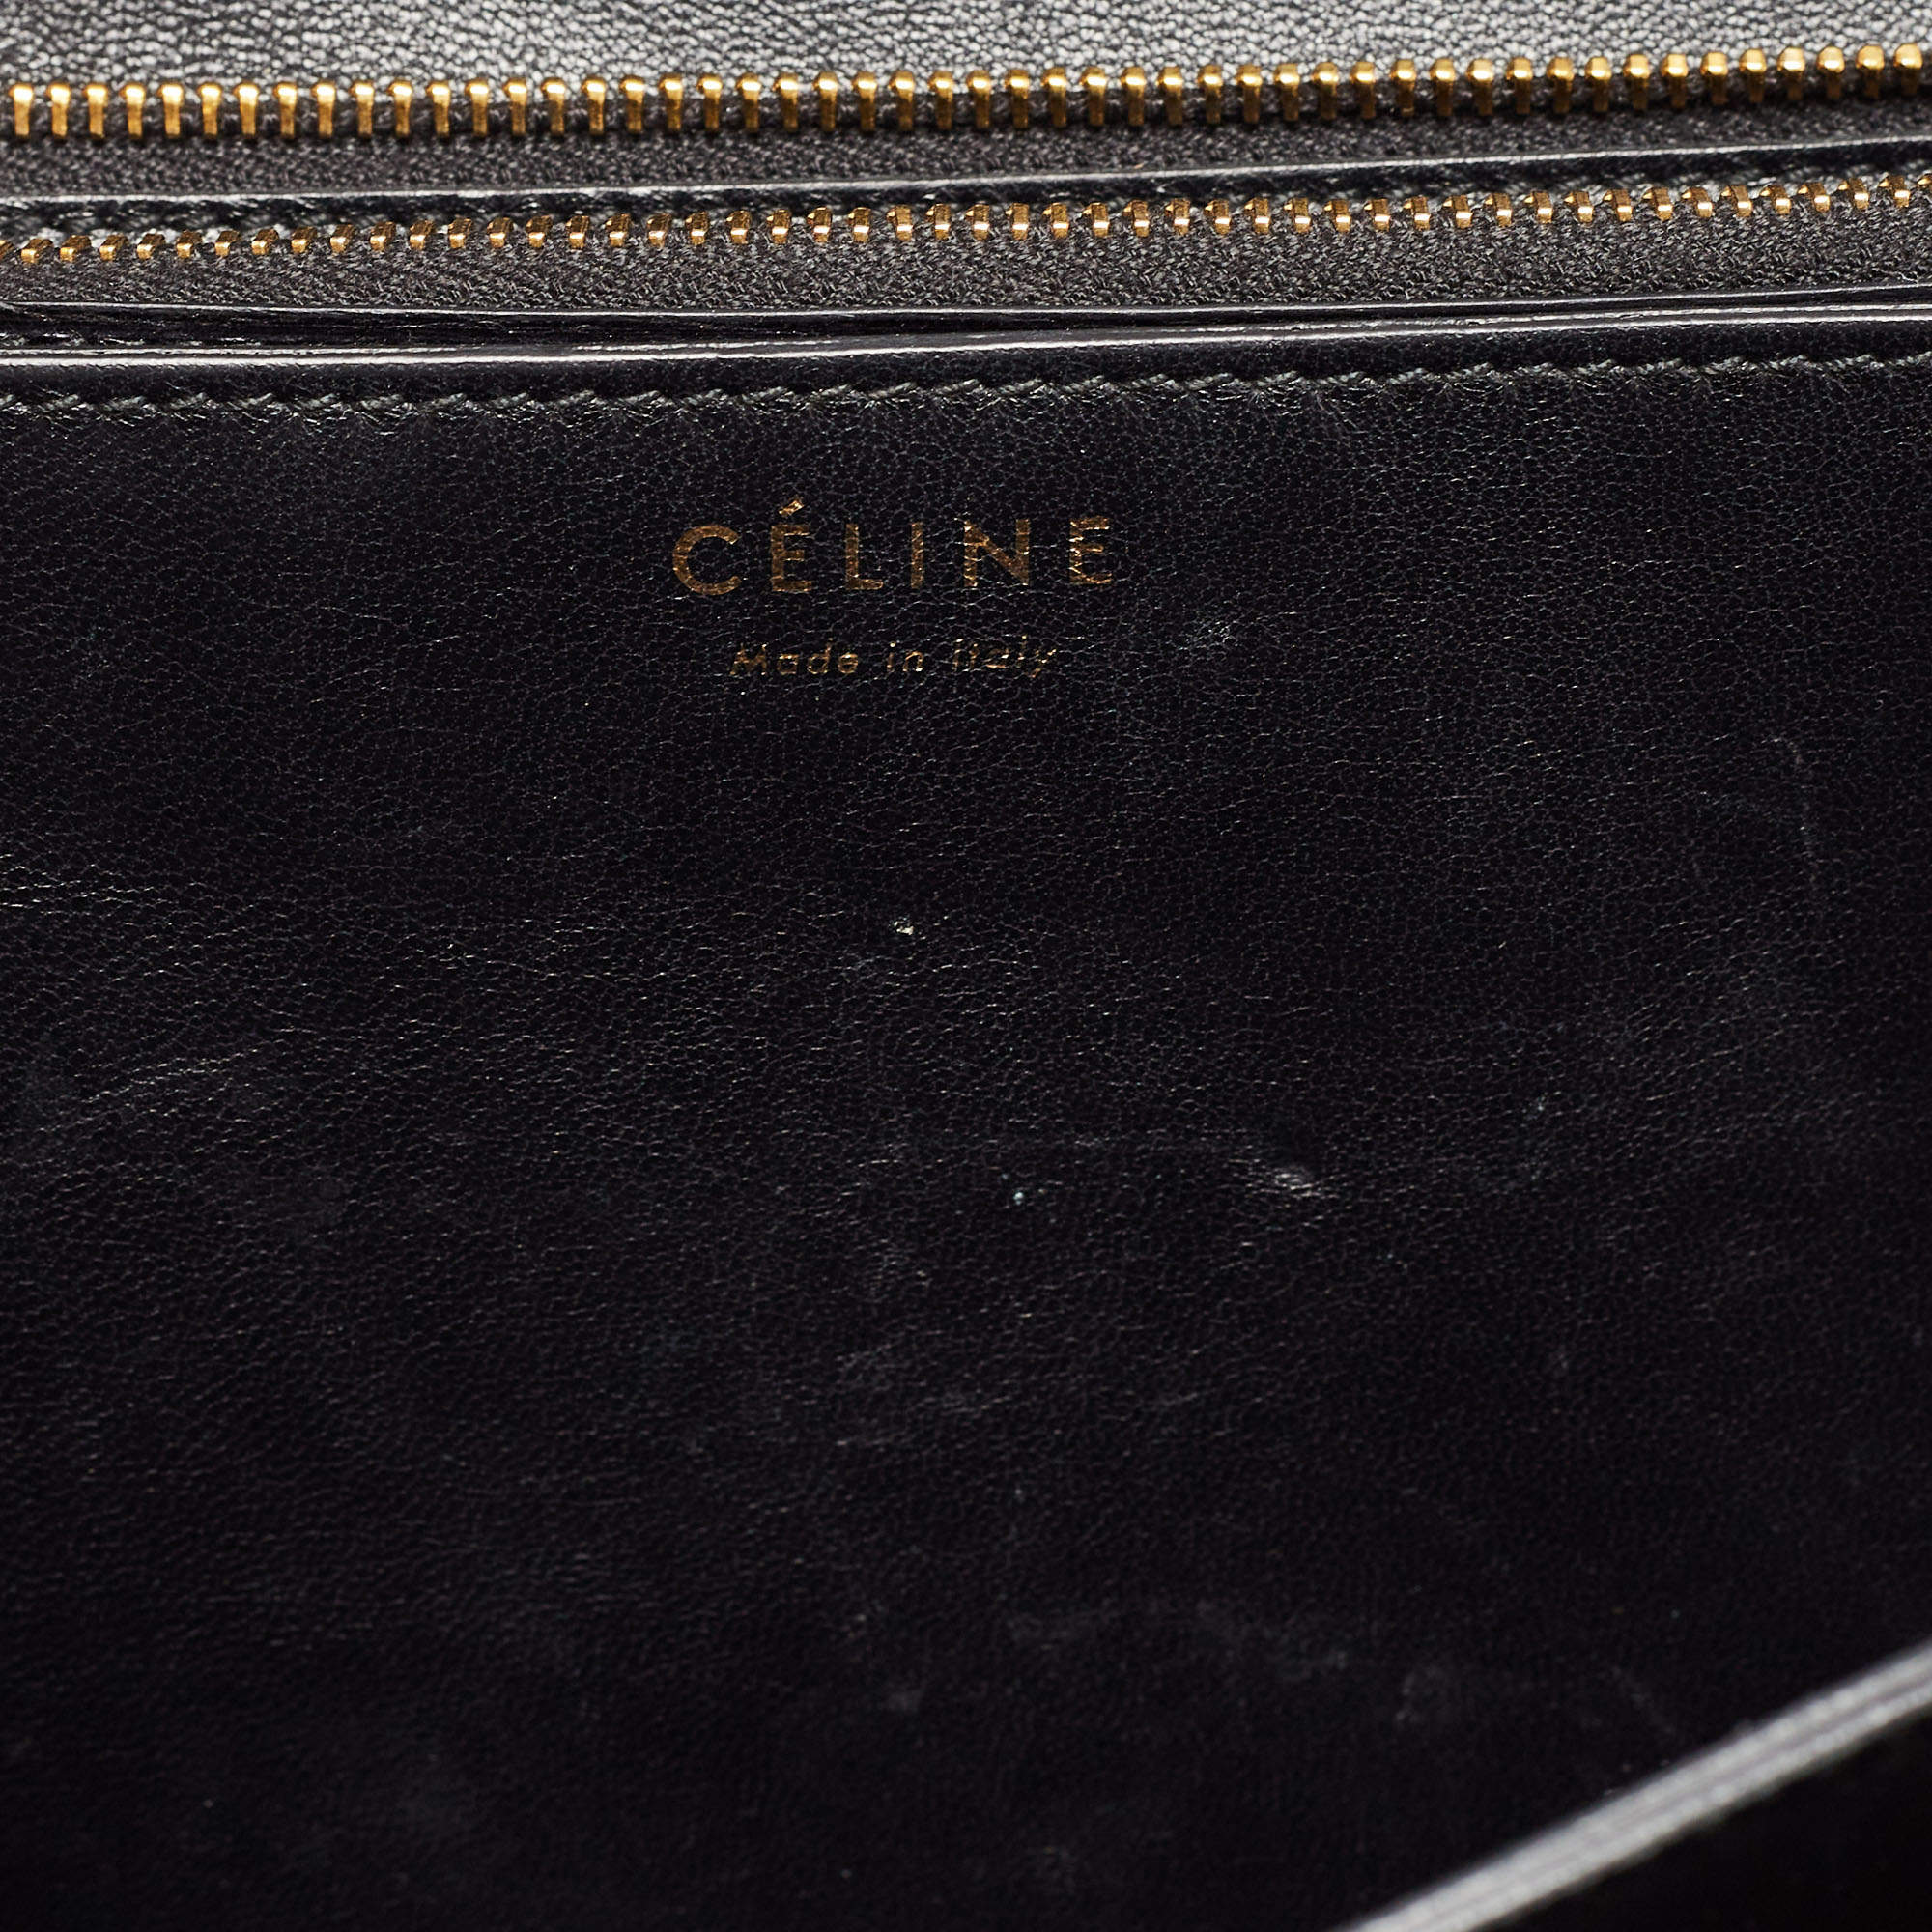 Celine Black/Beige Python and Leather Medium Classic Box Shoulder Bag Celine